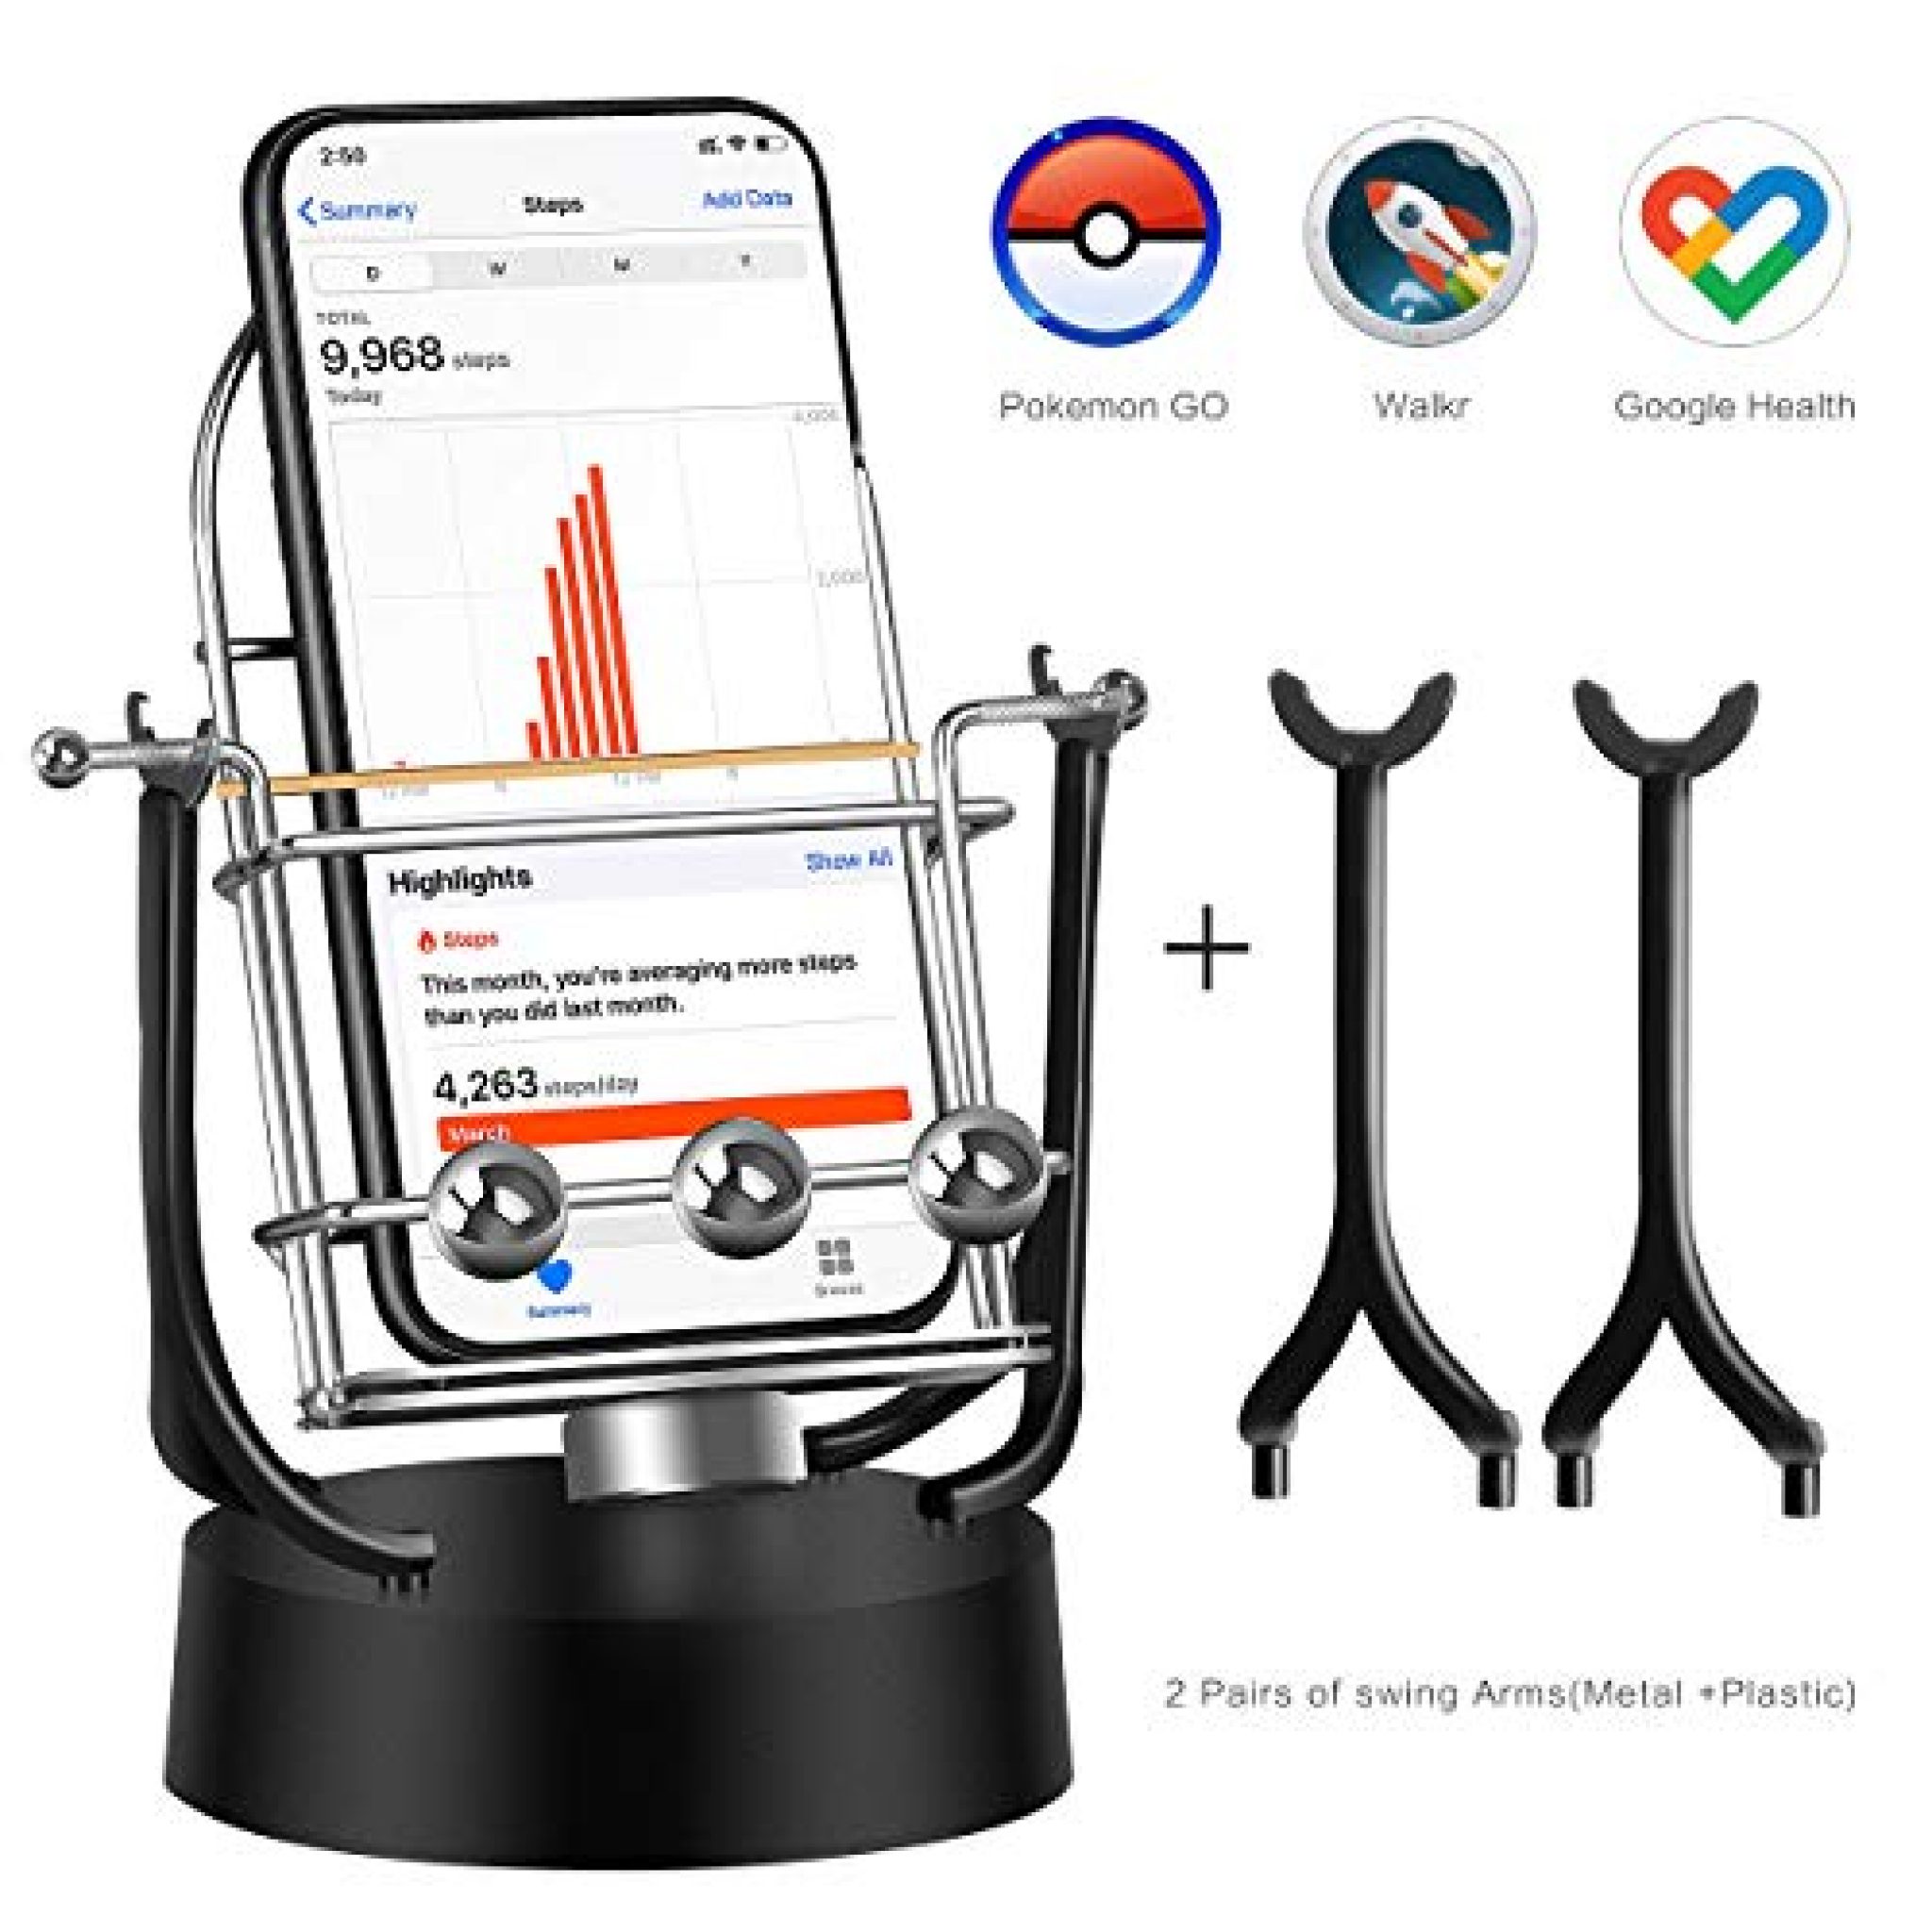 Phone Swing – Pokémon Go and Poké Ball Plus Compatible ...